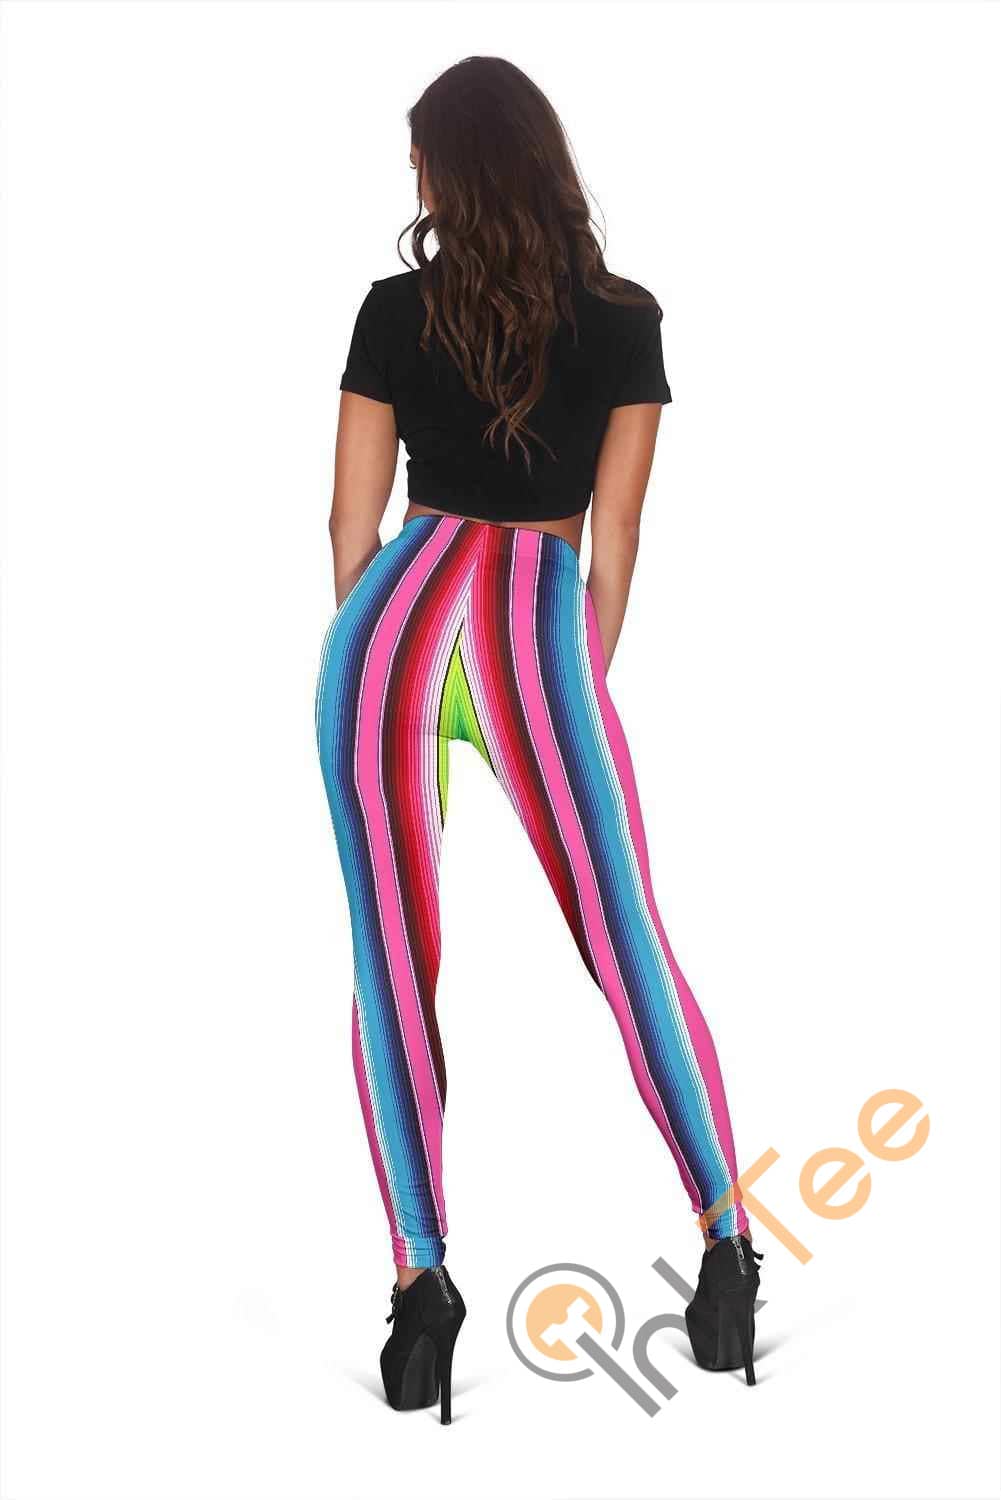 Inktee Store - Stripe Womens 3D All Over Print For Yoga Fitness Women'S Leggings Image